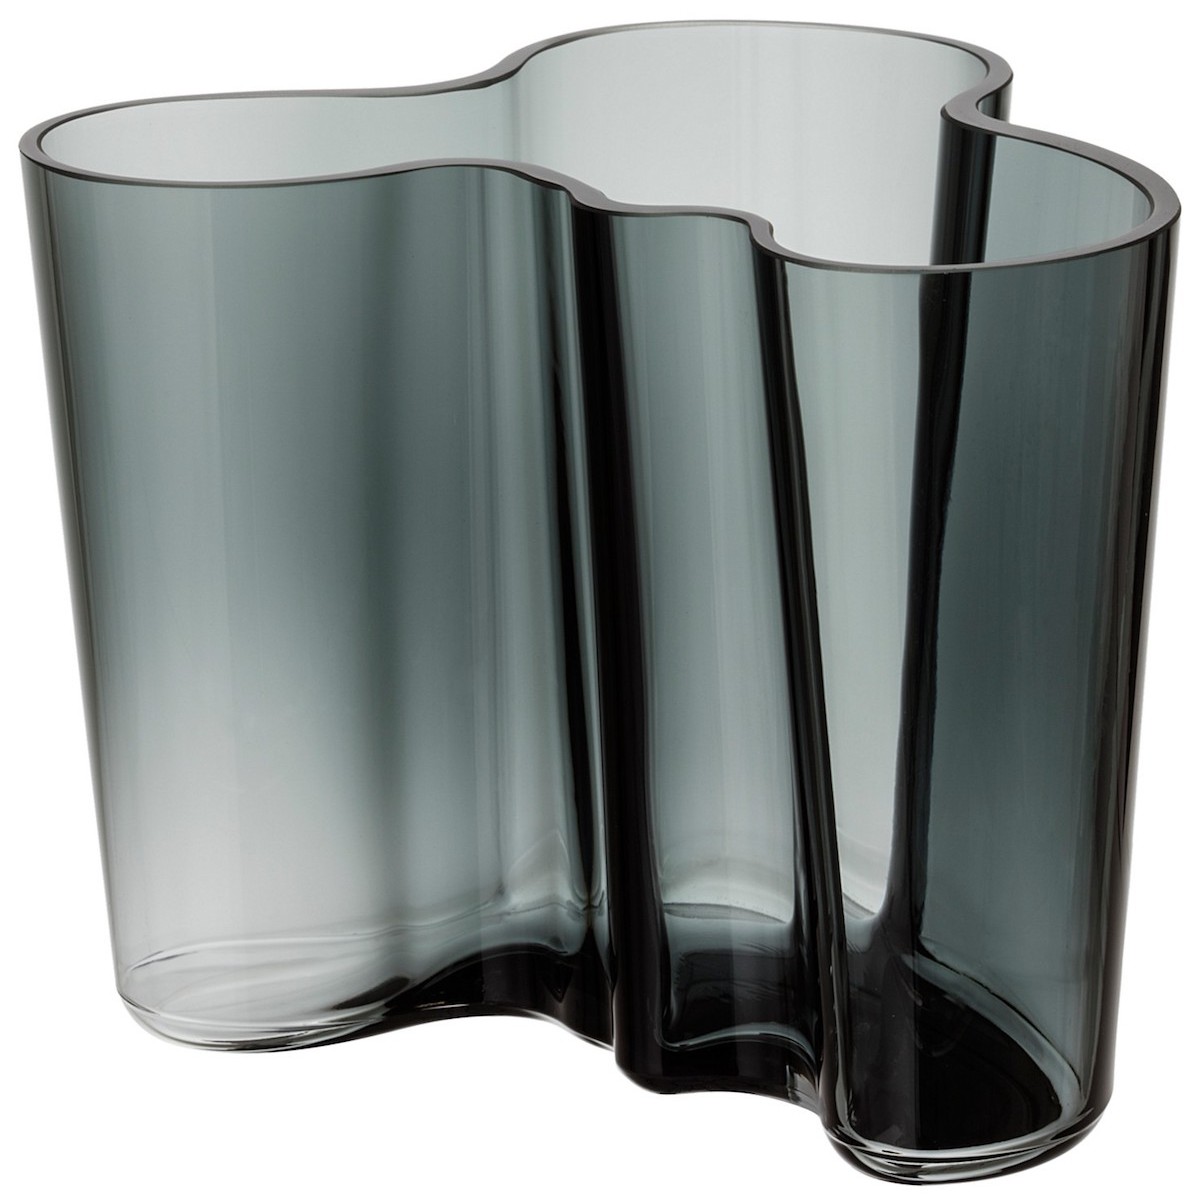 Aalto vase 160mm, dark grey - 1020905